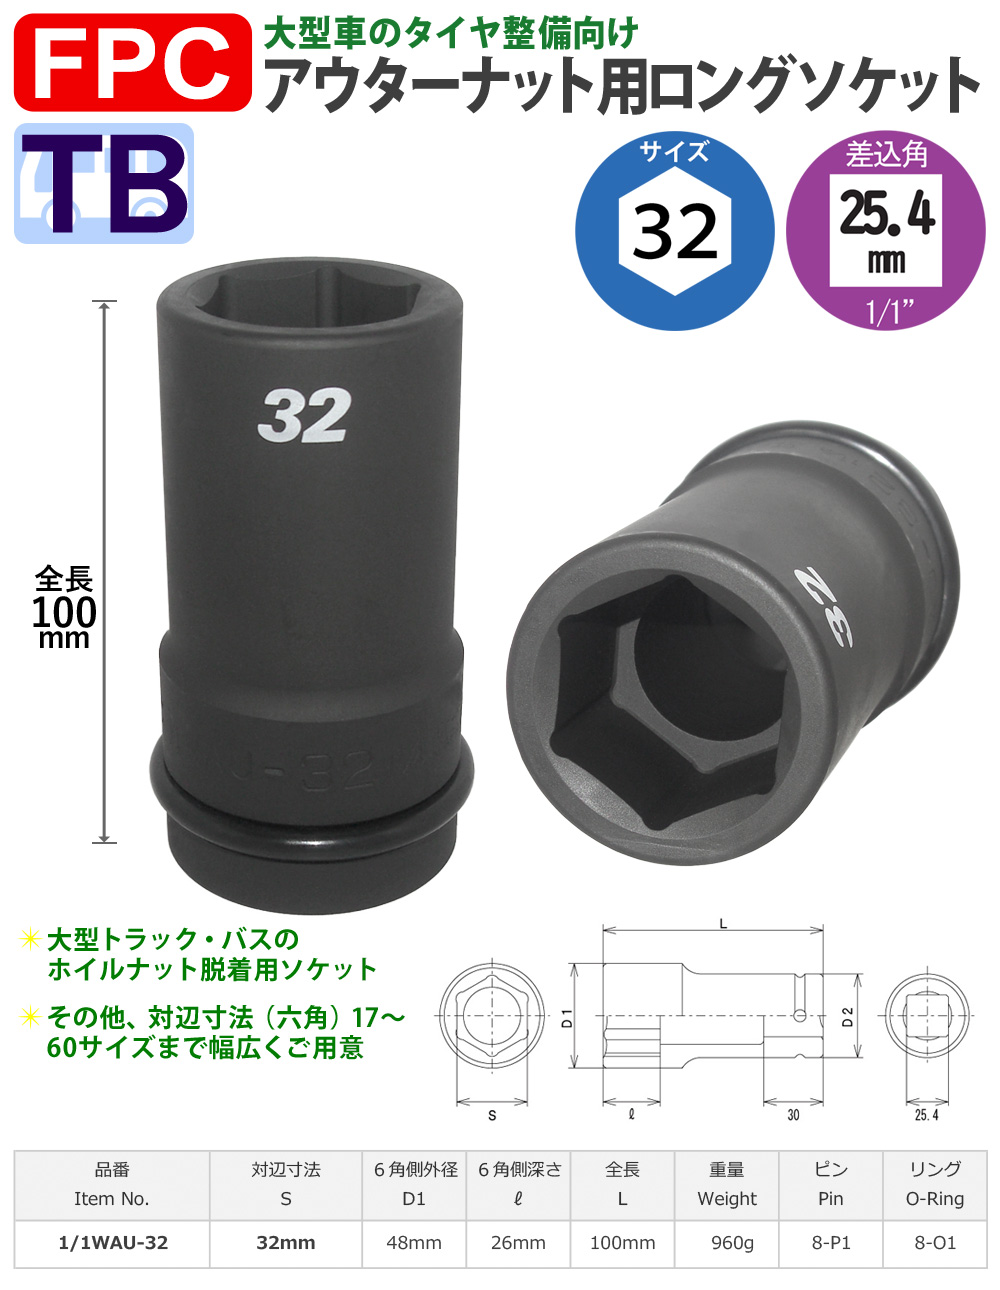 六角32mmサイズ 25.4角 ロングソケット 大型インパクト対応 FPC